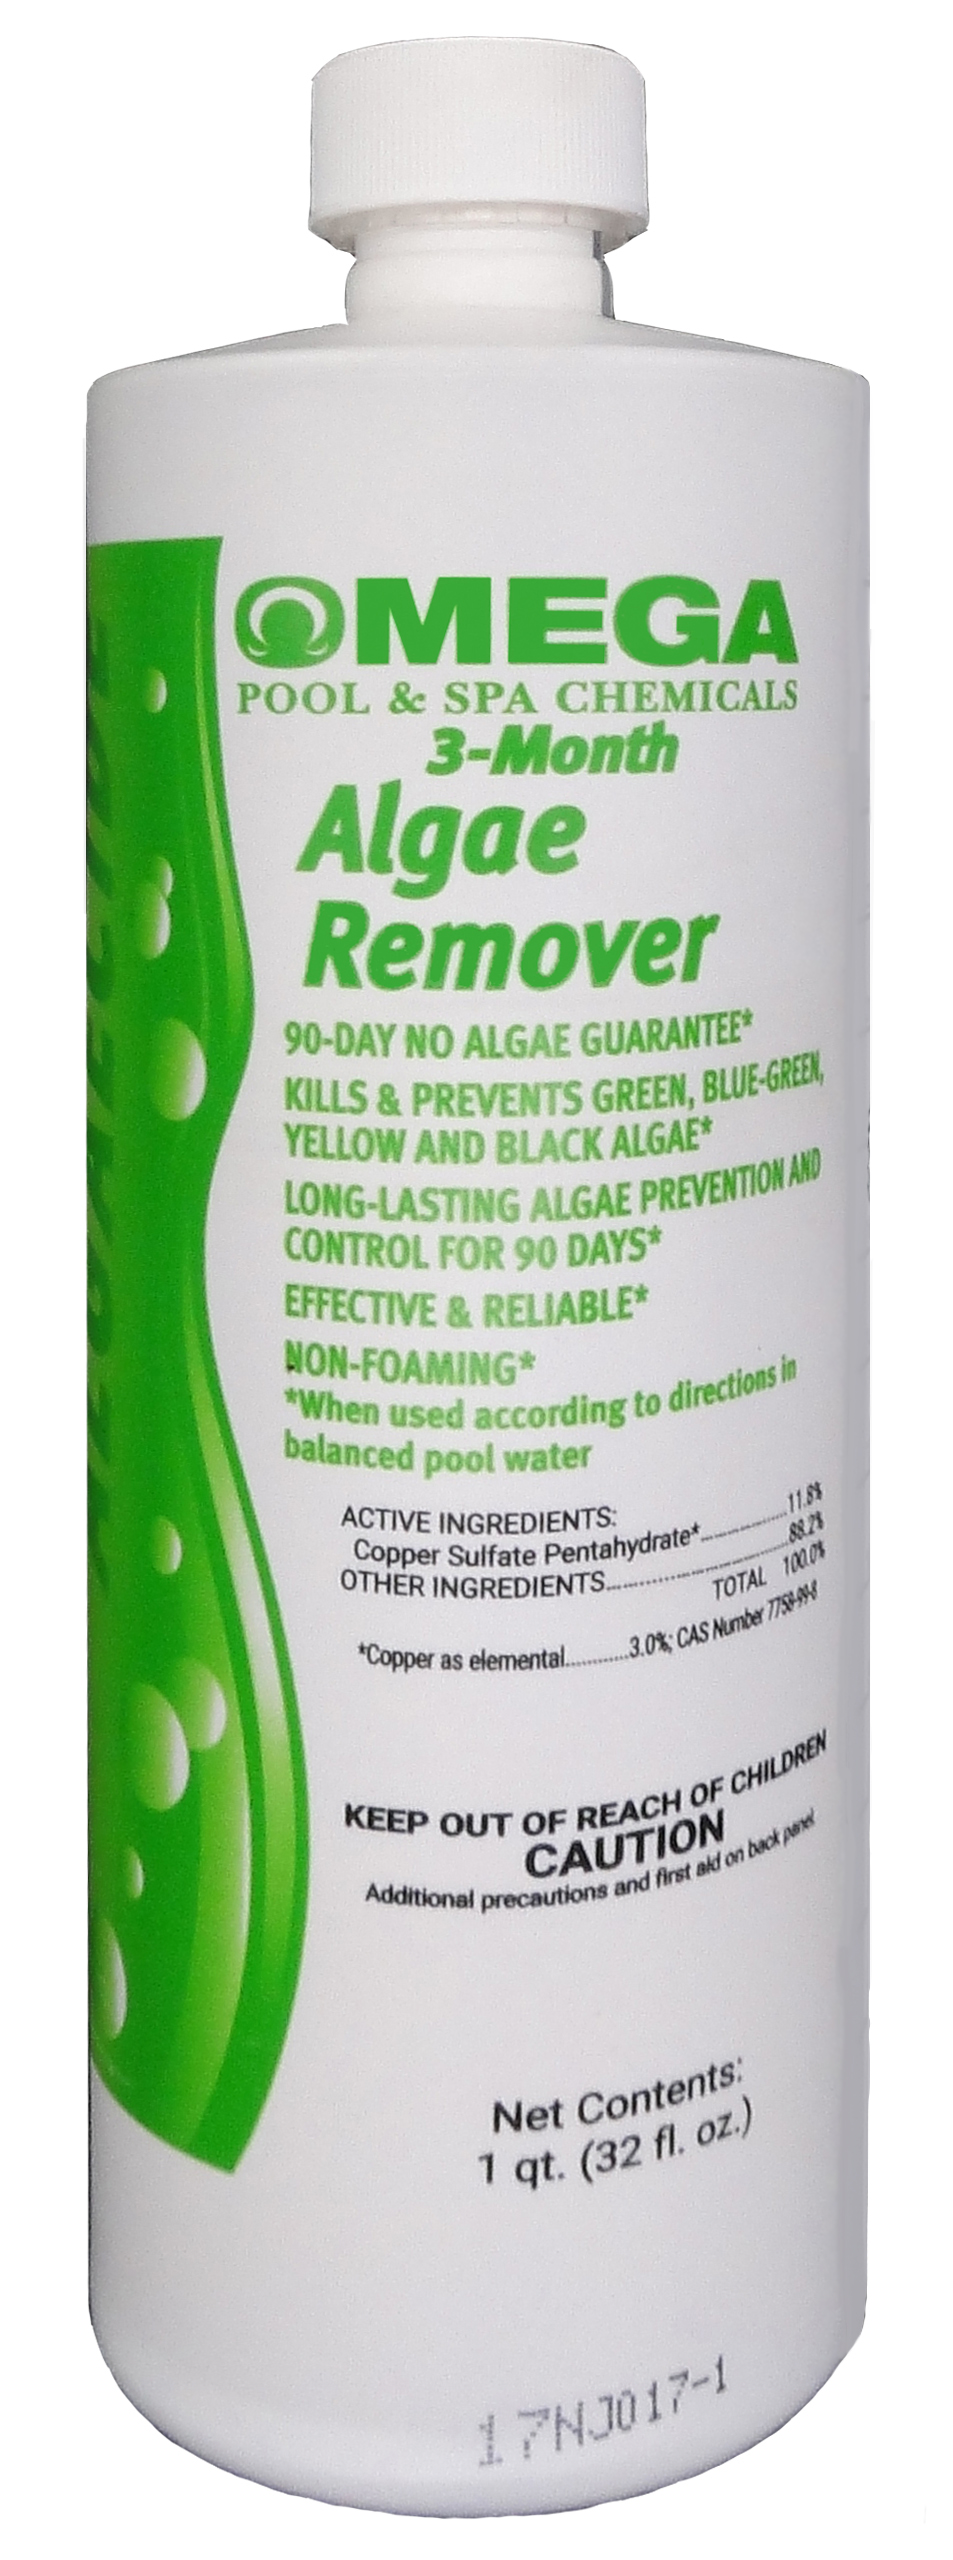 3-Month Algae Remover